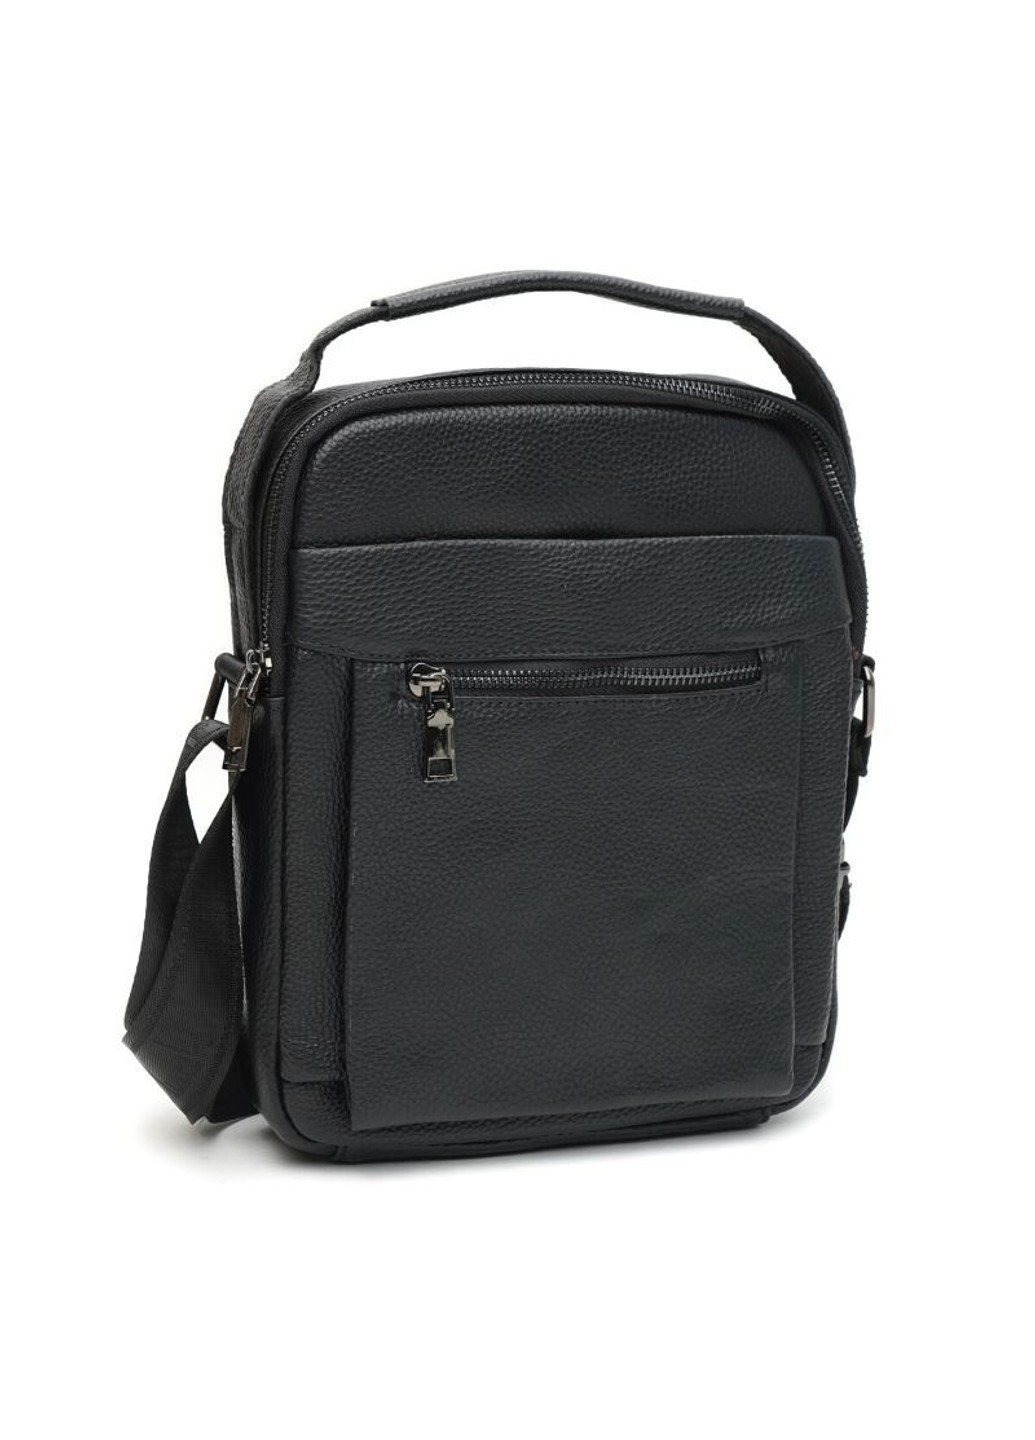 Мужская кожаная сумка k1885-black Borsa Leather (266143181)